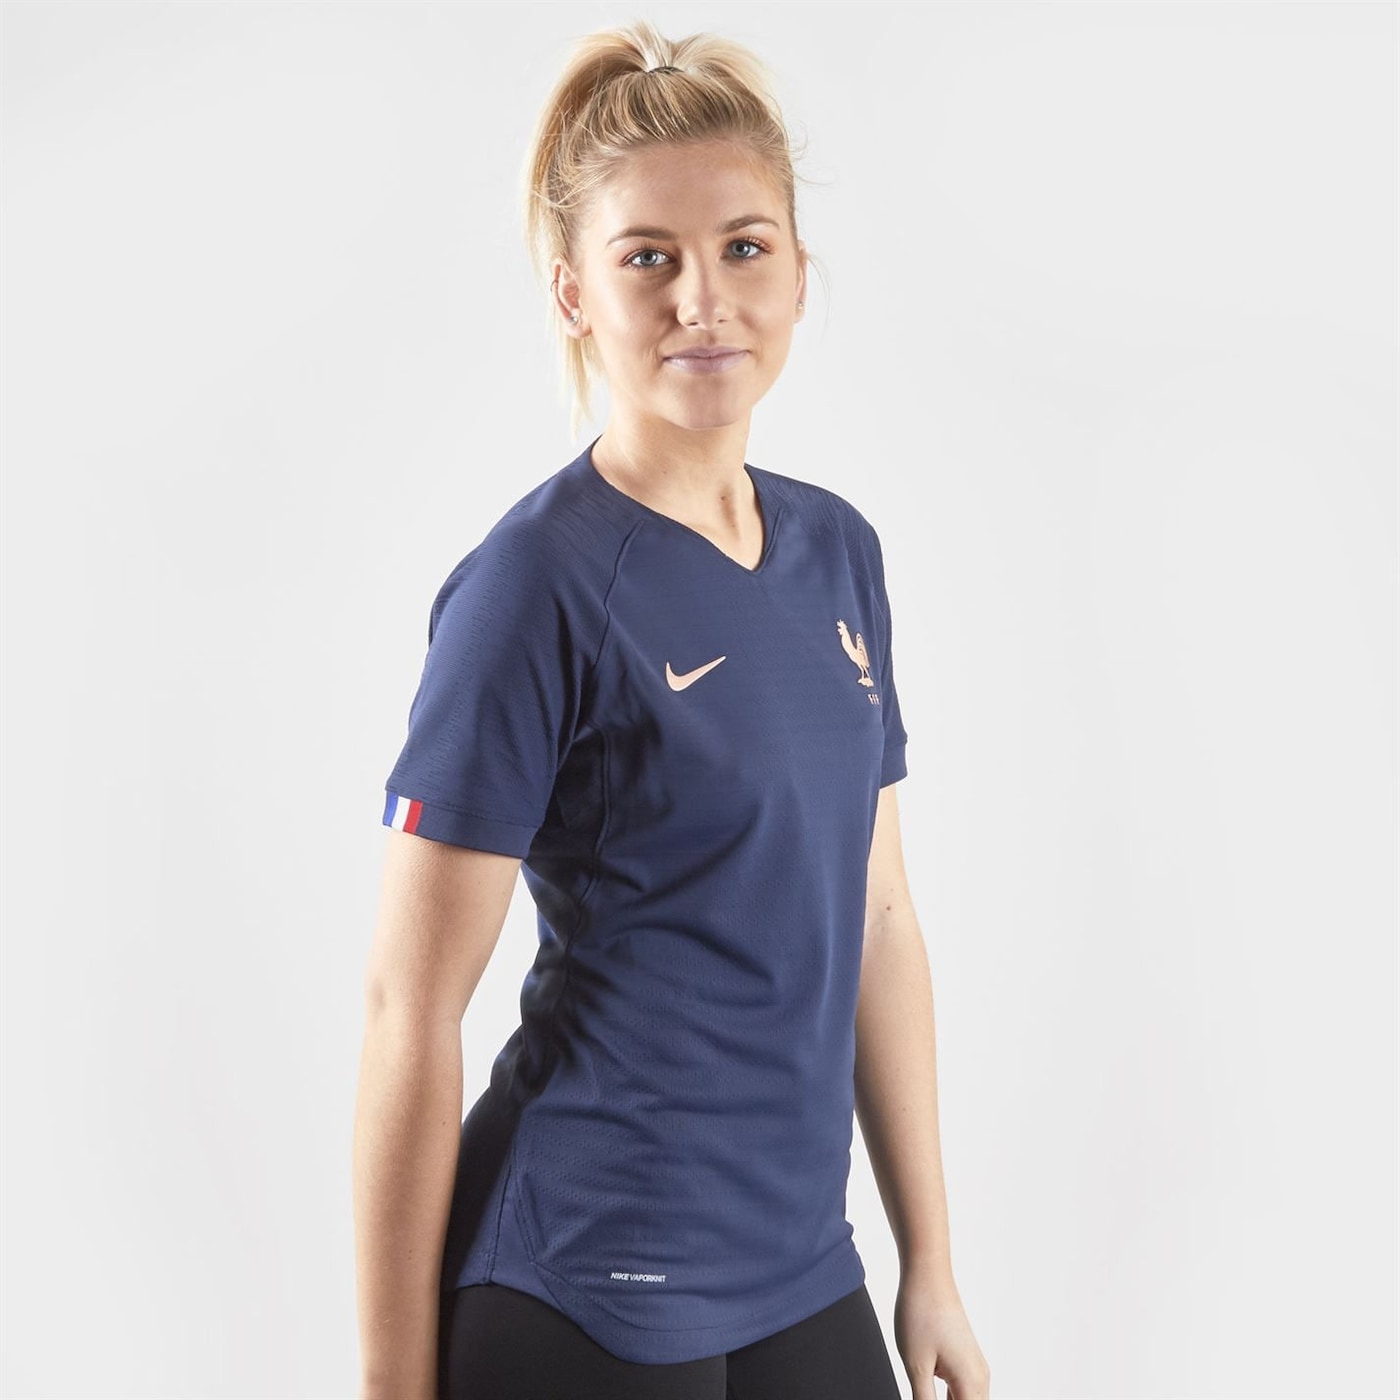 Жени  Дамско облекло  Блузи  Функционални тениски и потници Nike FFF 2019 Home Shirt Womens 1271948-7076275